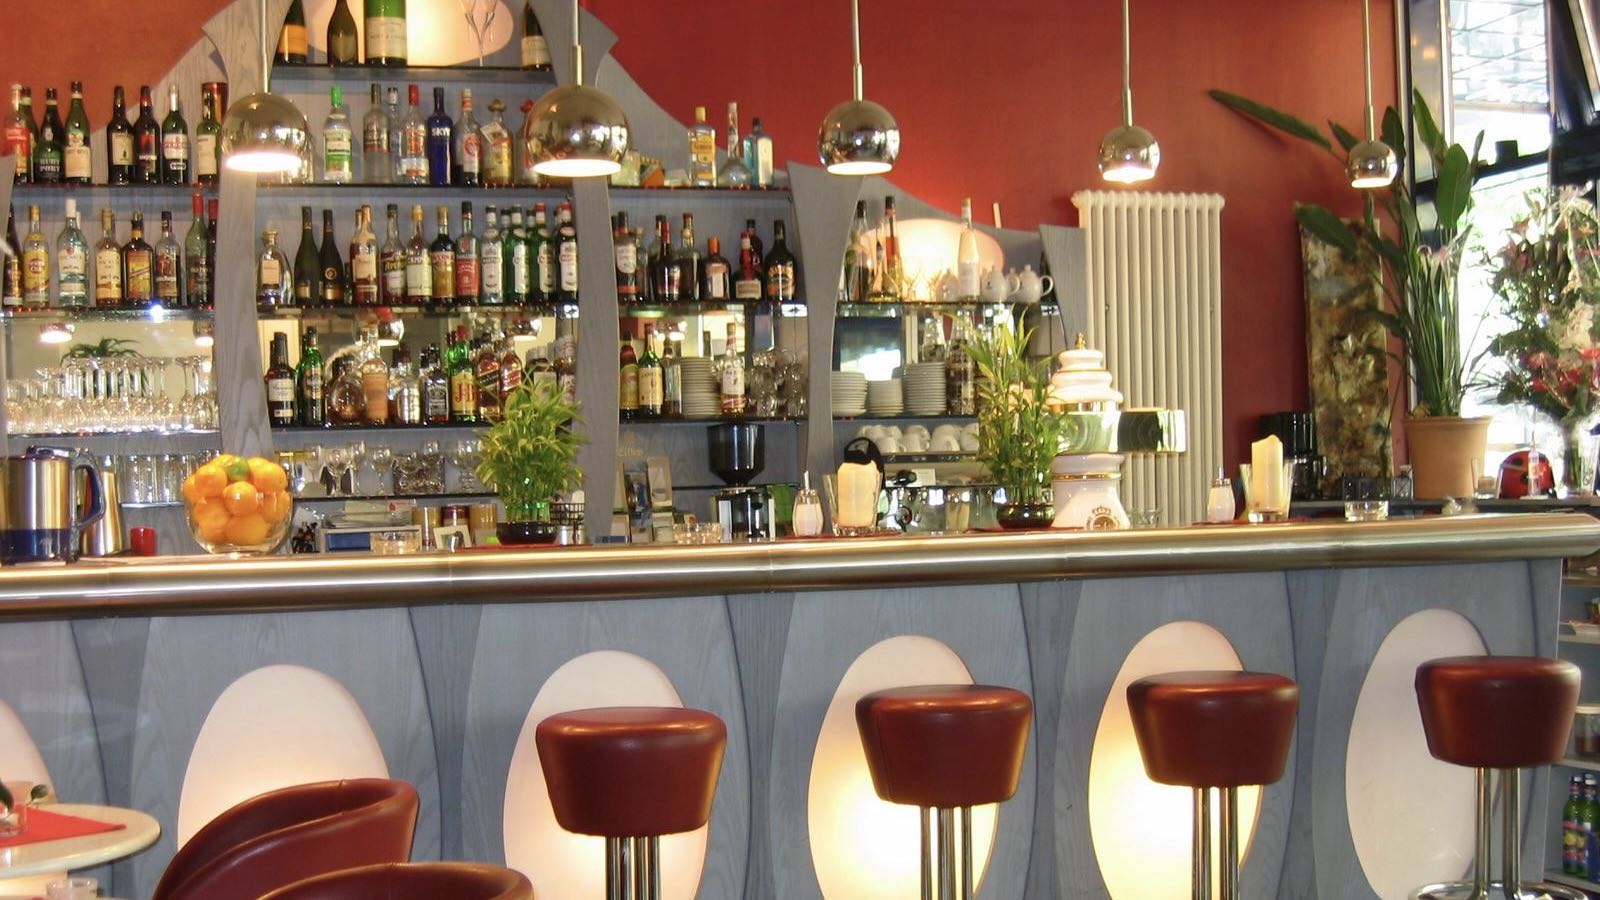 Hollywood-Media-Filmhotel-Restaurant-Cafe-Callas best Berlin Hotel Bars interior